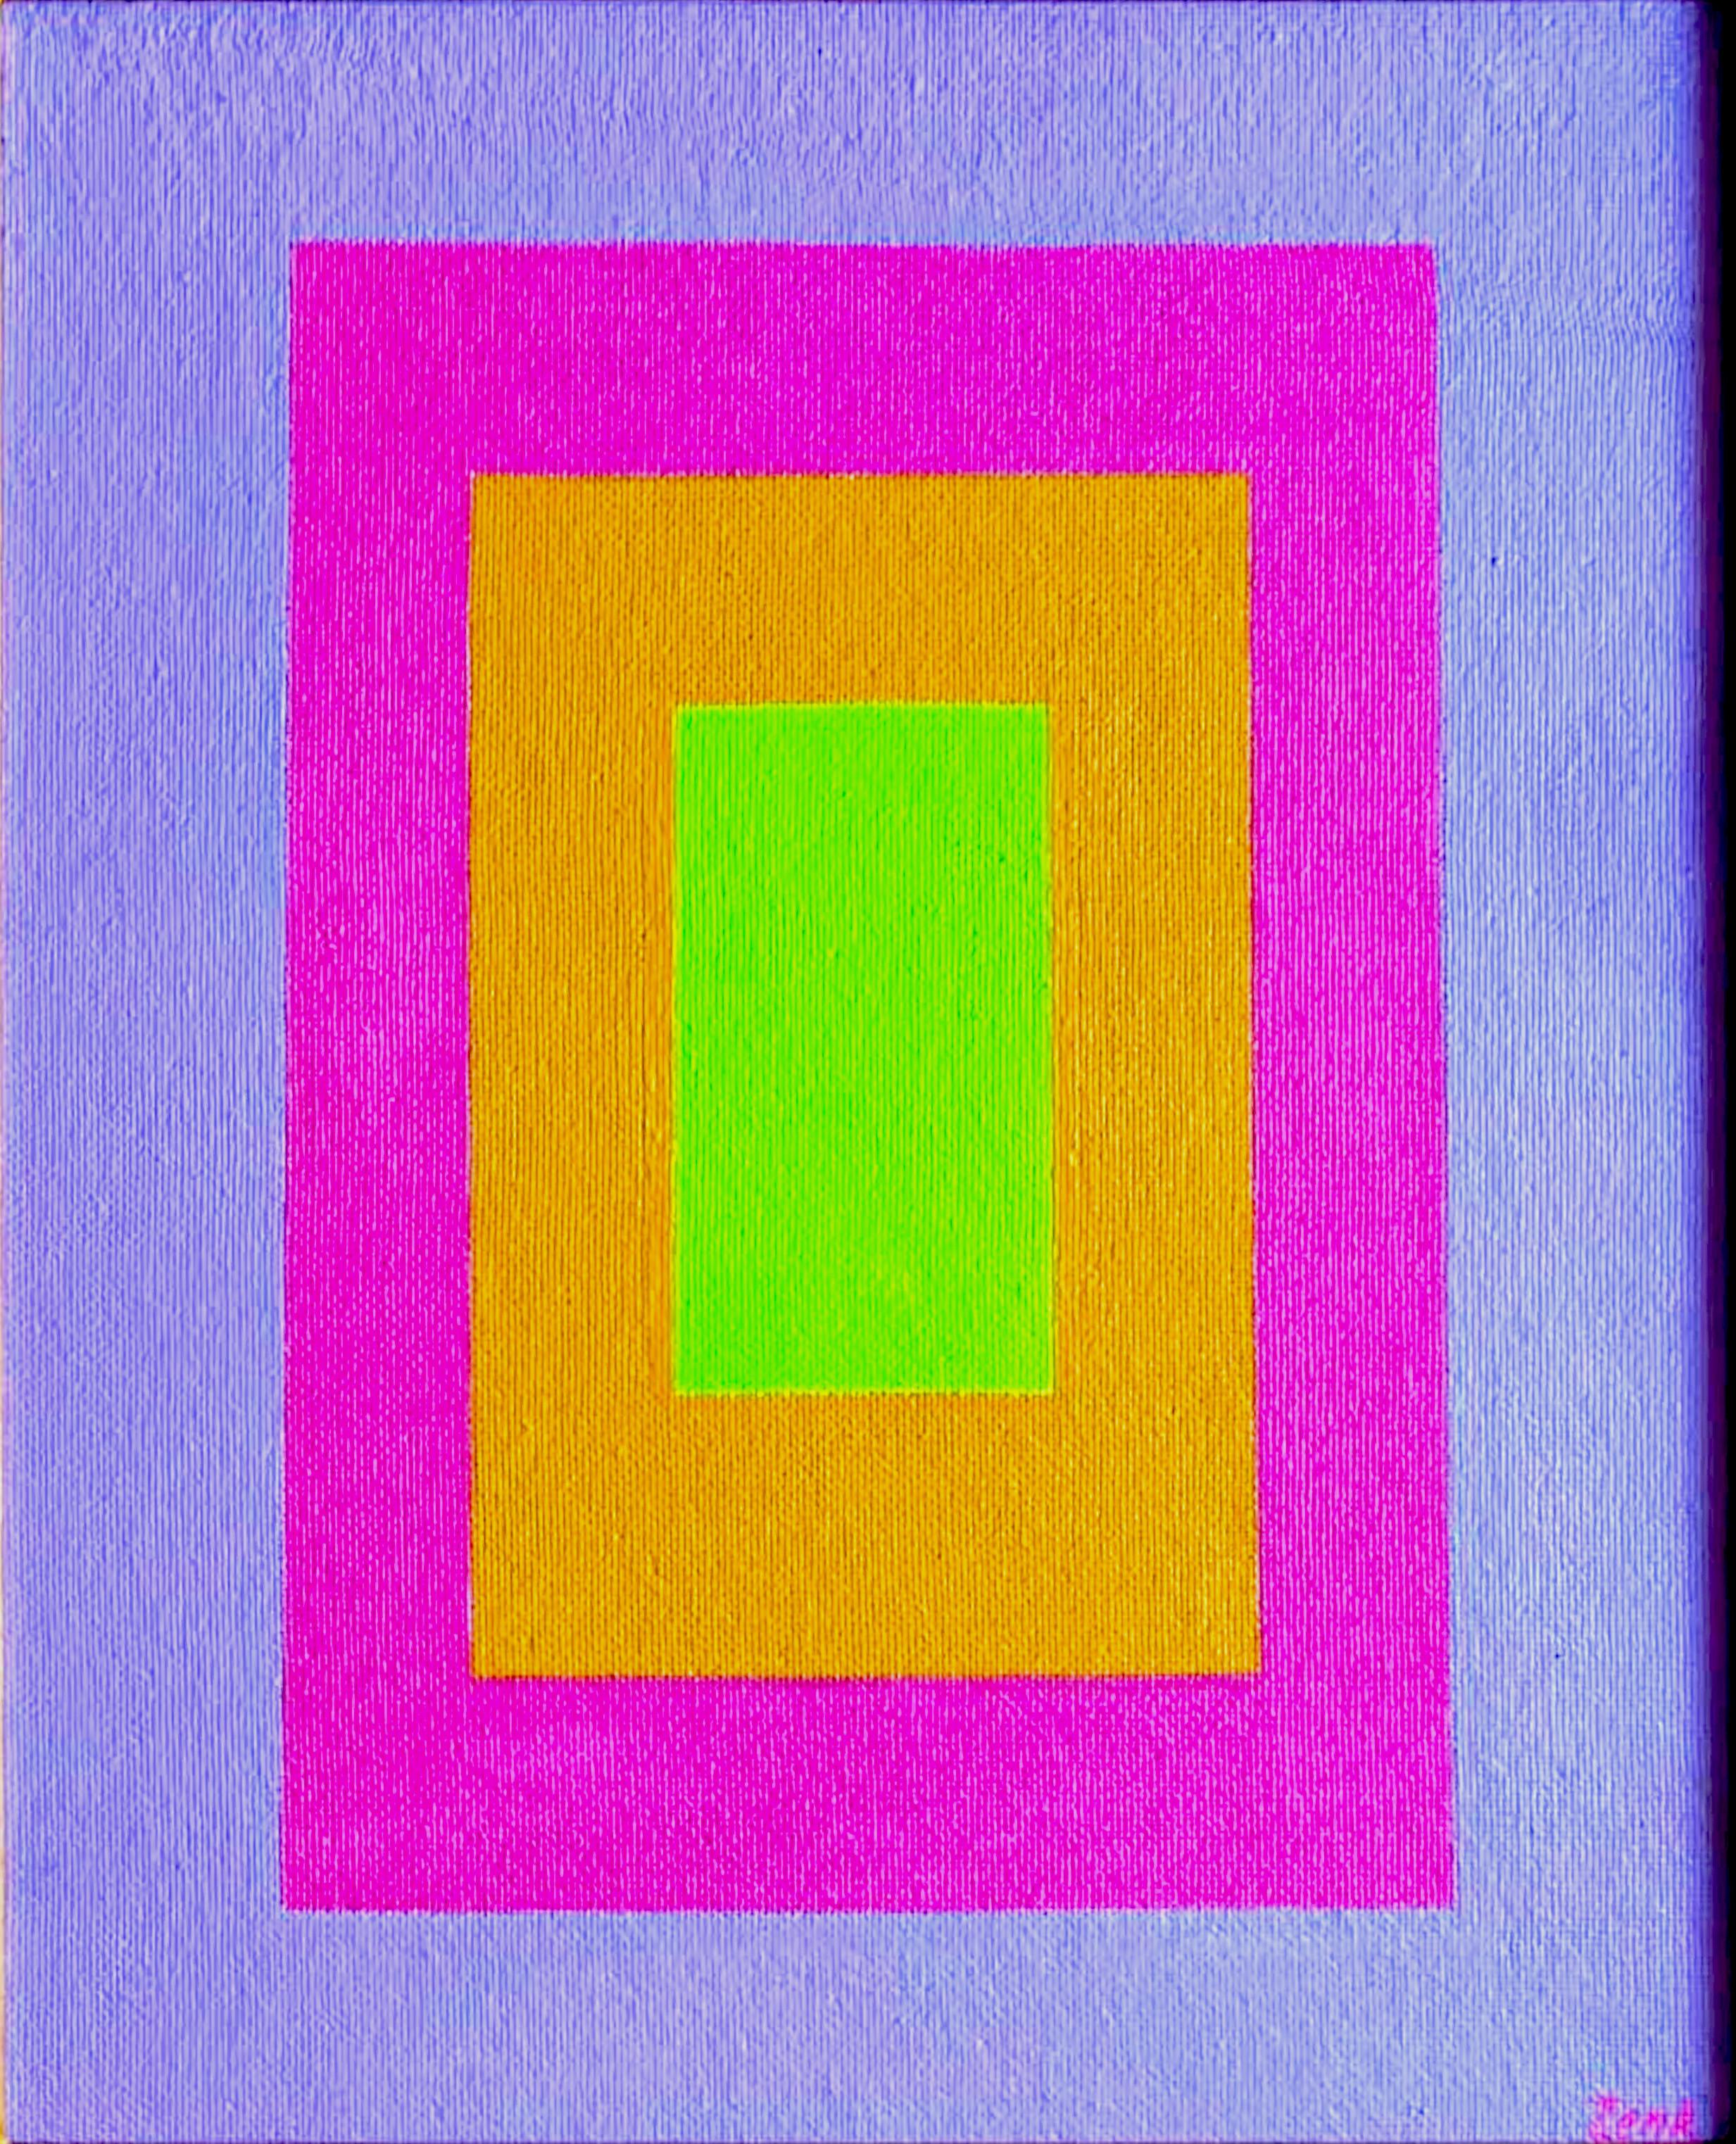 Einzigartiges Gemälde Konzentrische Quadrate (Mid Century Modern Geometrische Abstraktion)  – Painting von Josef Zenk